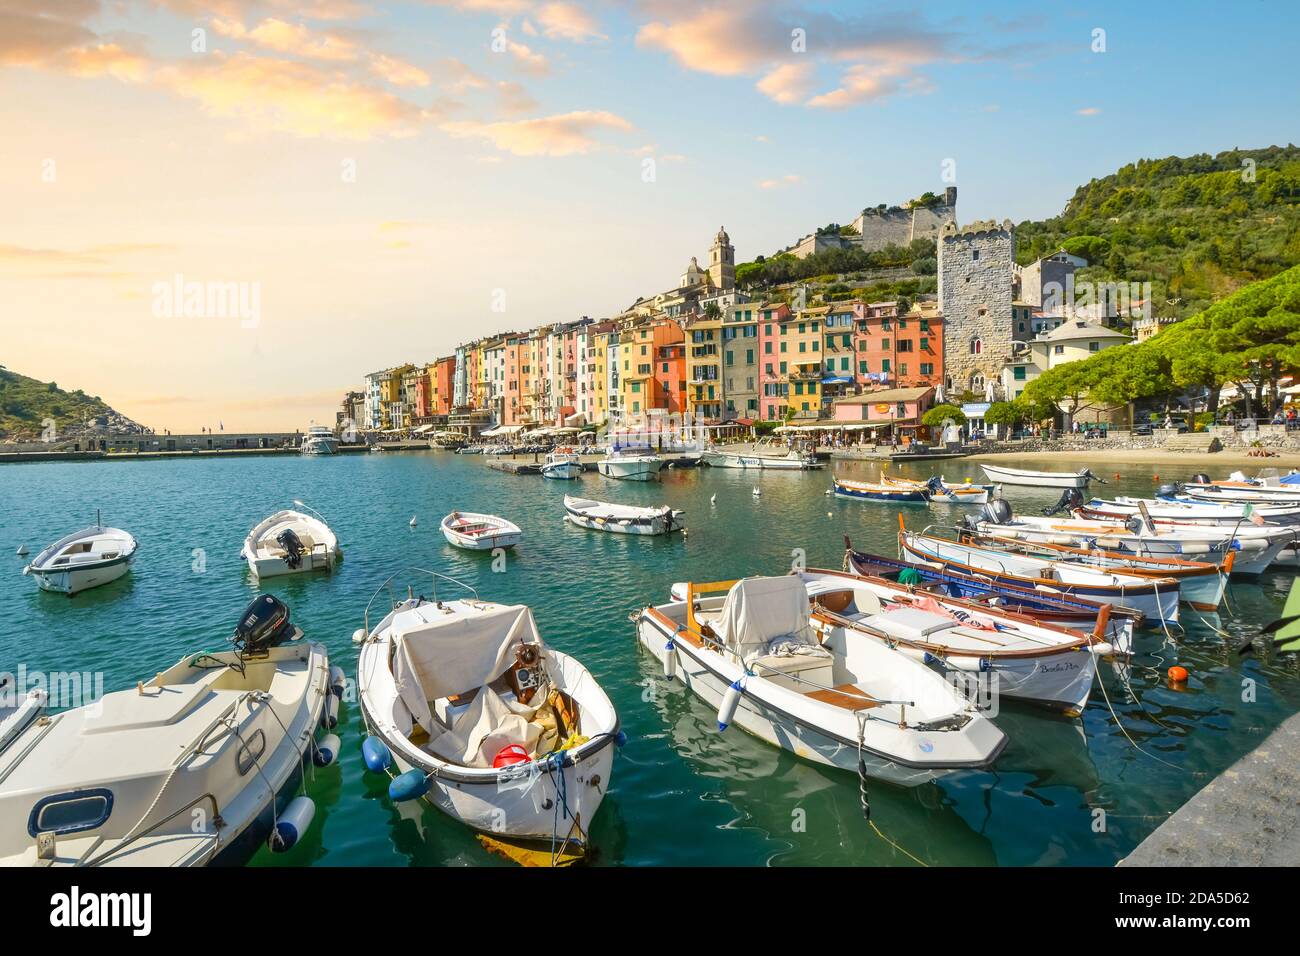 Boote säumen den Hafen der bunten, touristischen italienischen Stadt Portovenere, entlang der ligurischen Küste der italienischen Riviera. Stockfoto